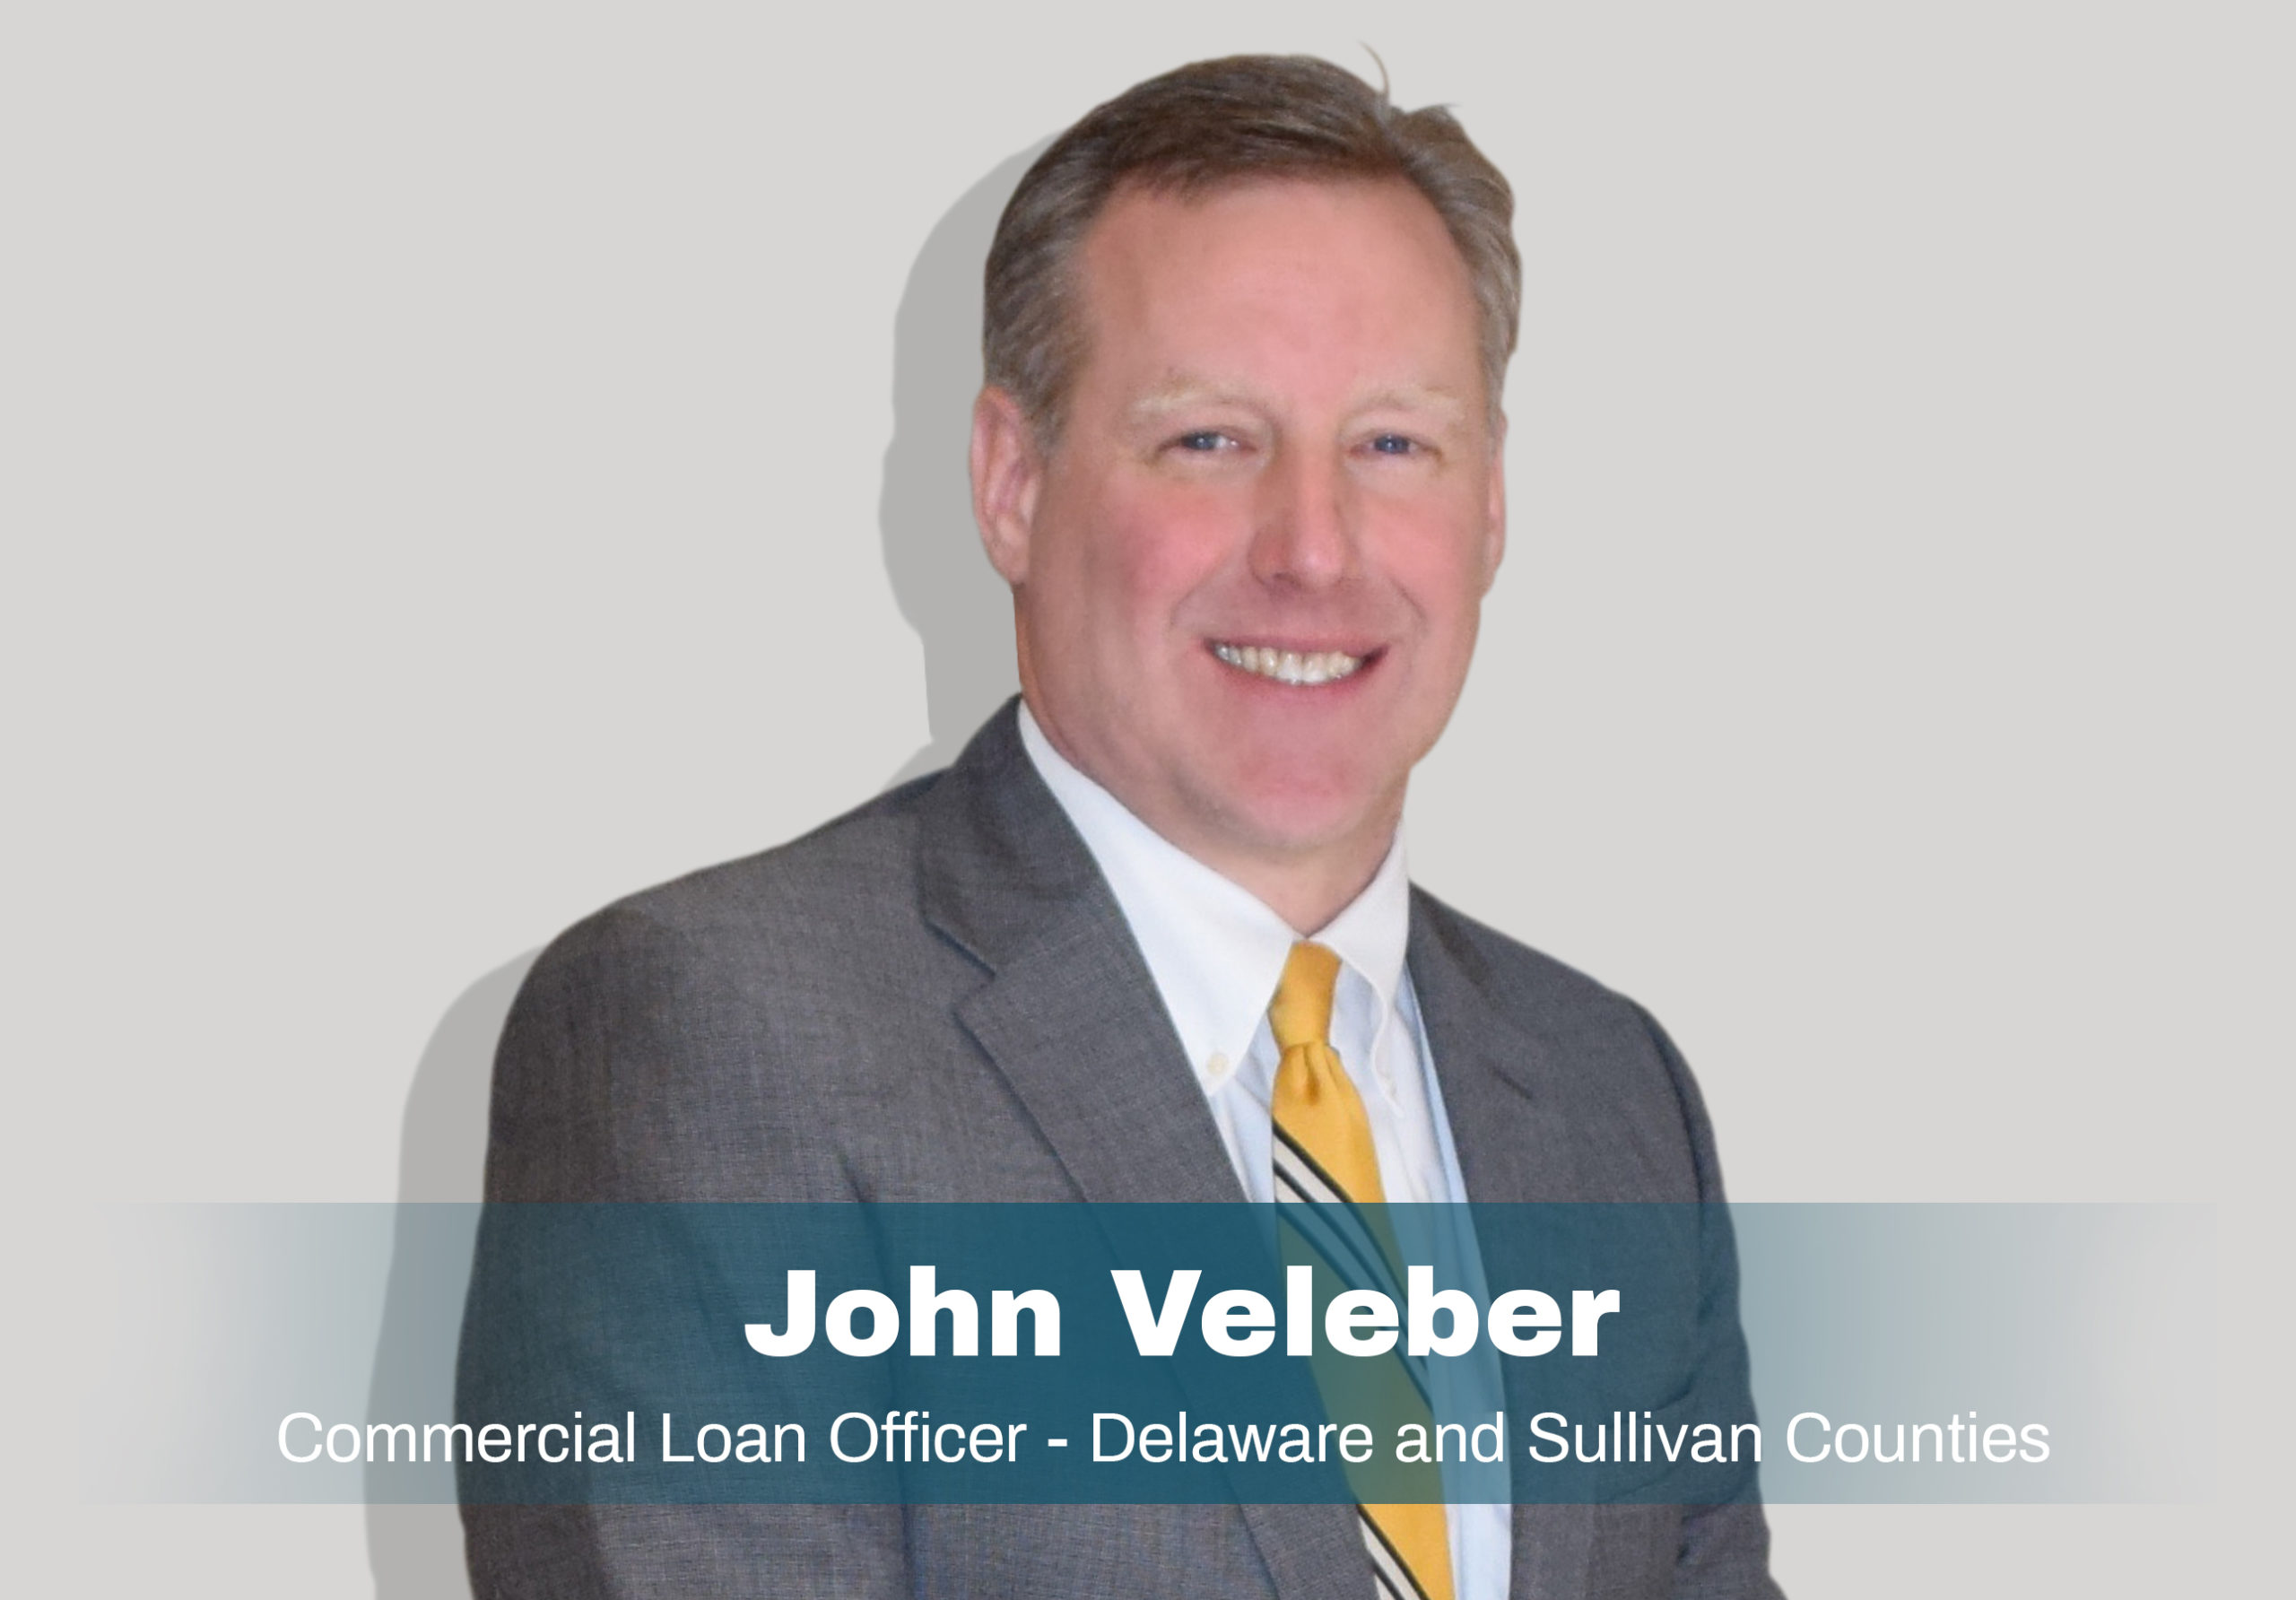 John Veleber